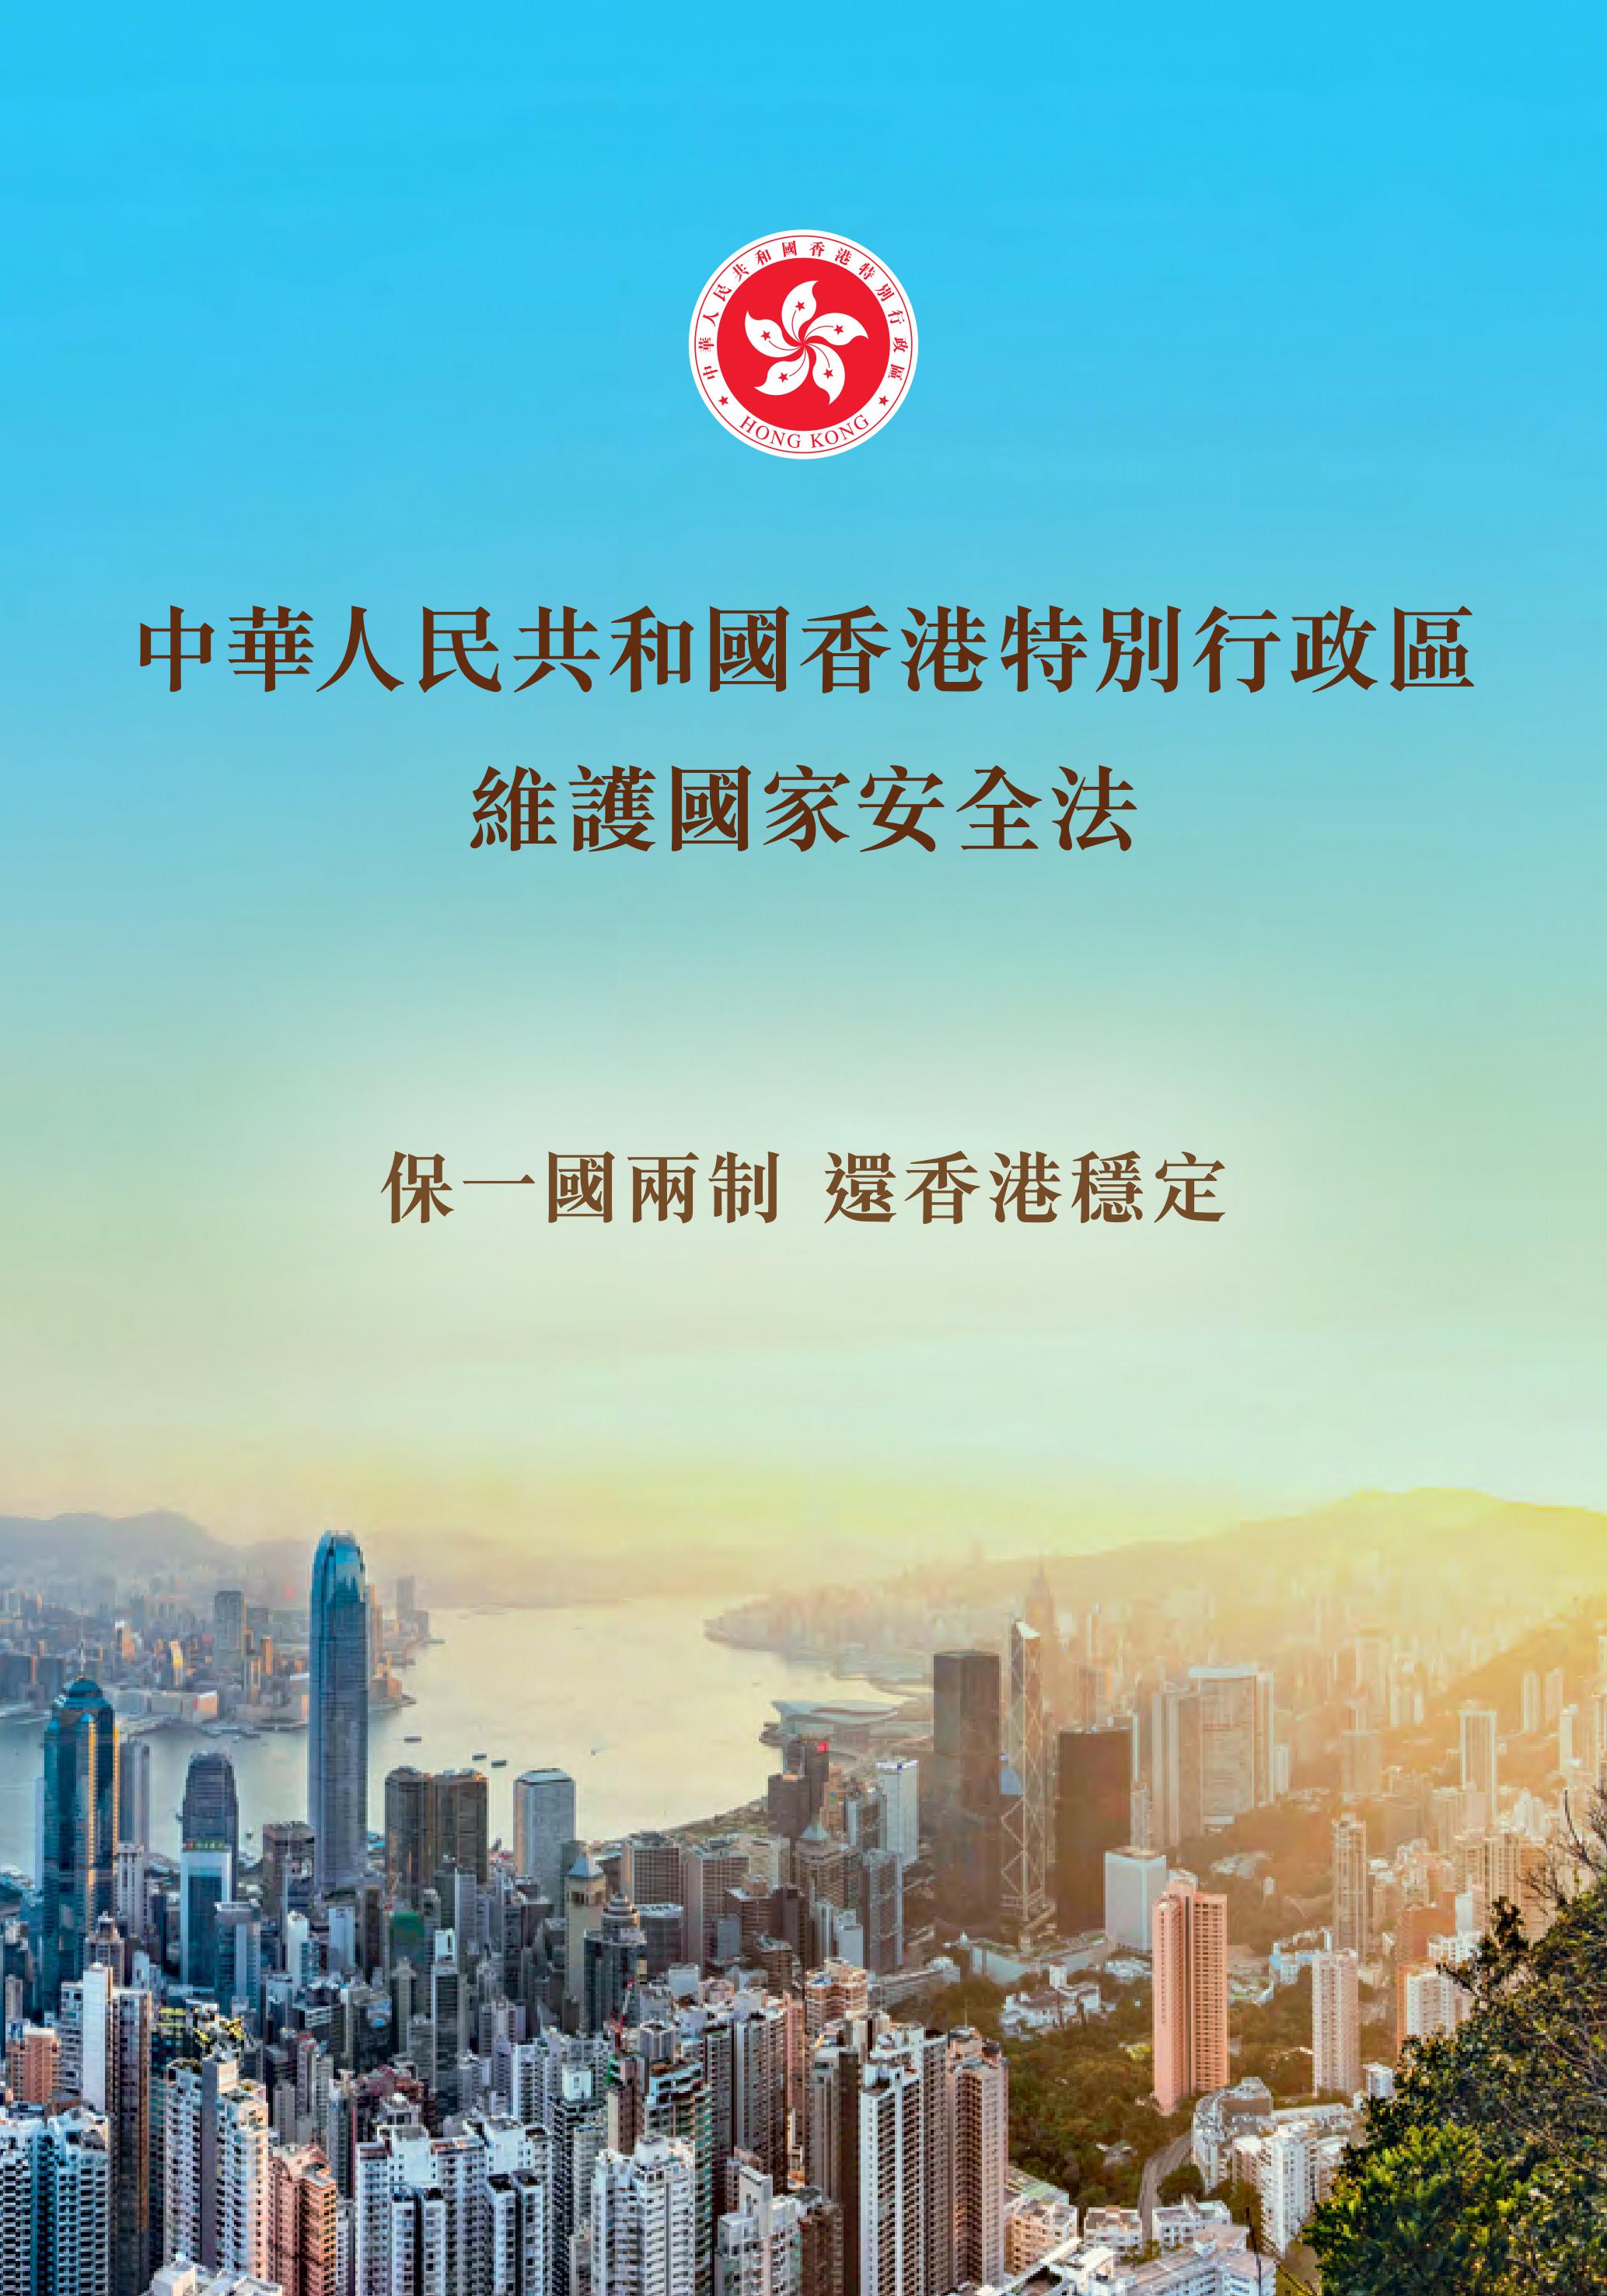 《中华人民共和国香港特别行政区<br>维护国家安全法》小册子